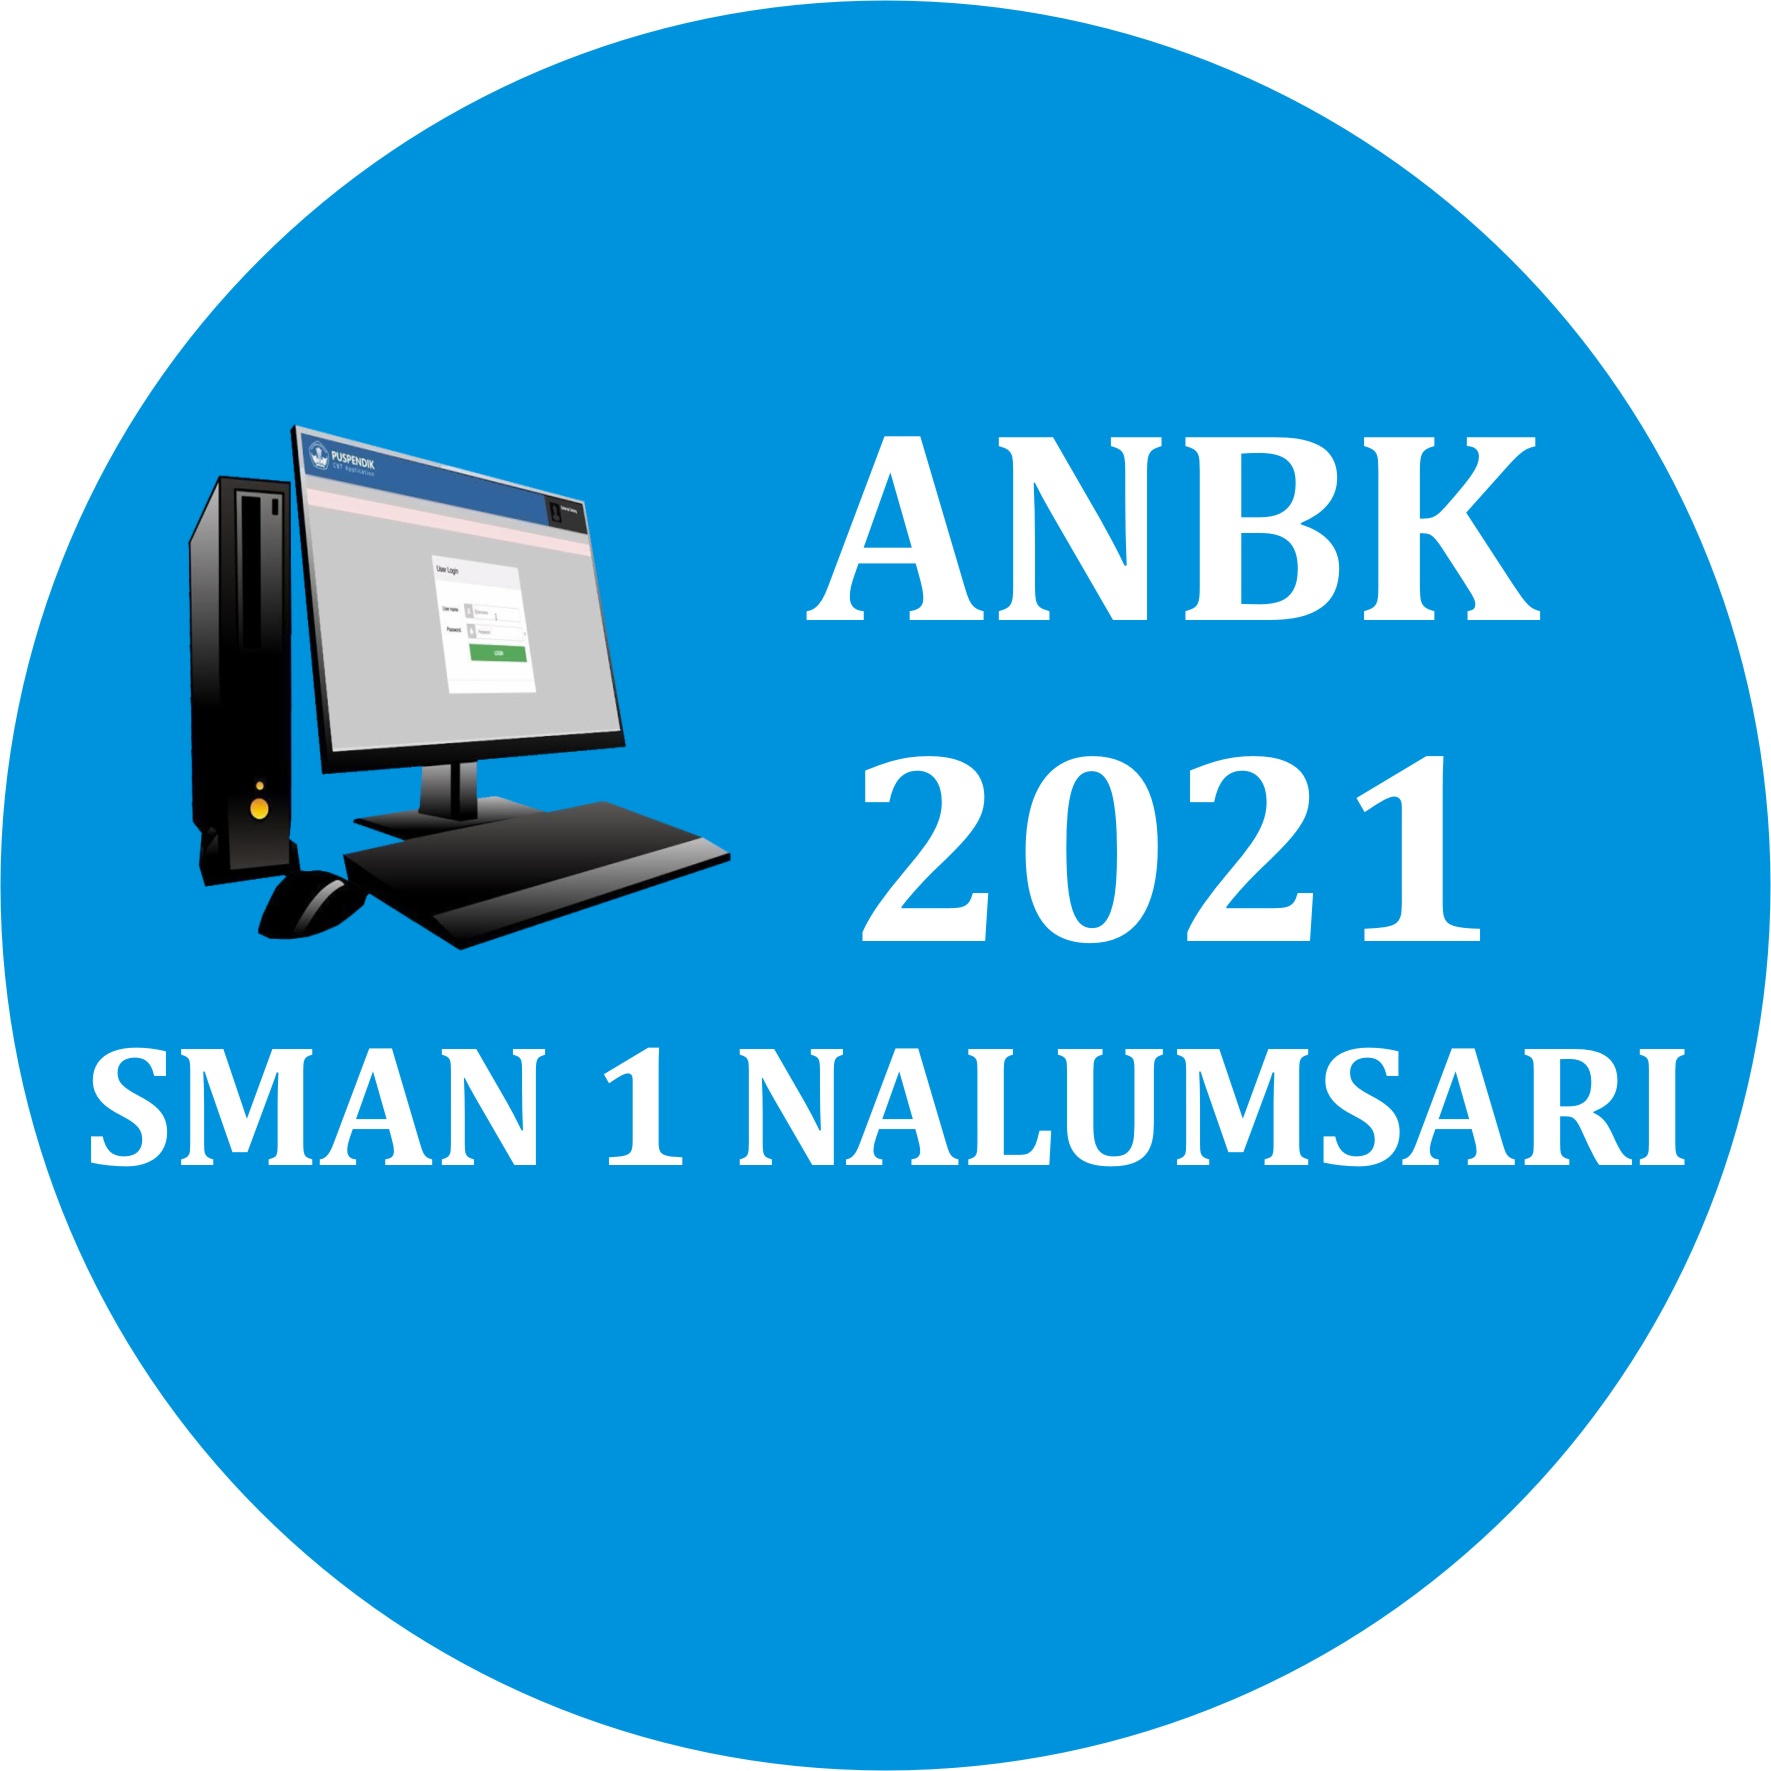 ANBK 2021 SMAN 1 NALUMSARI